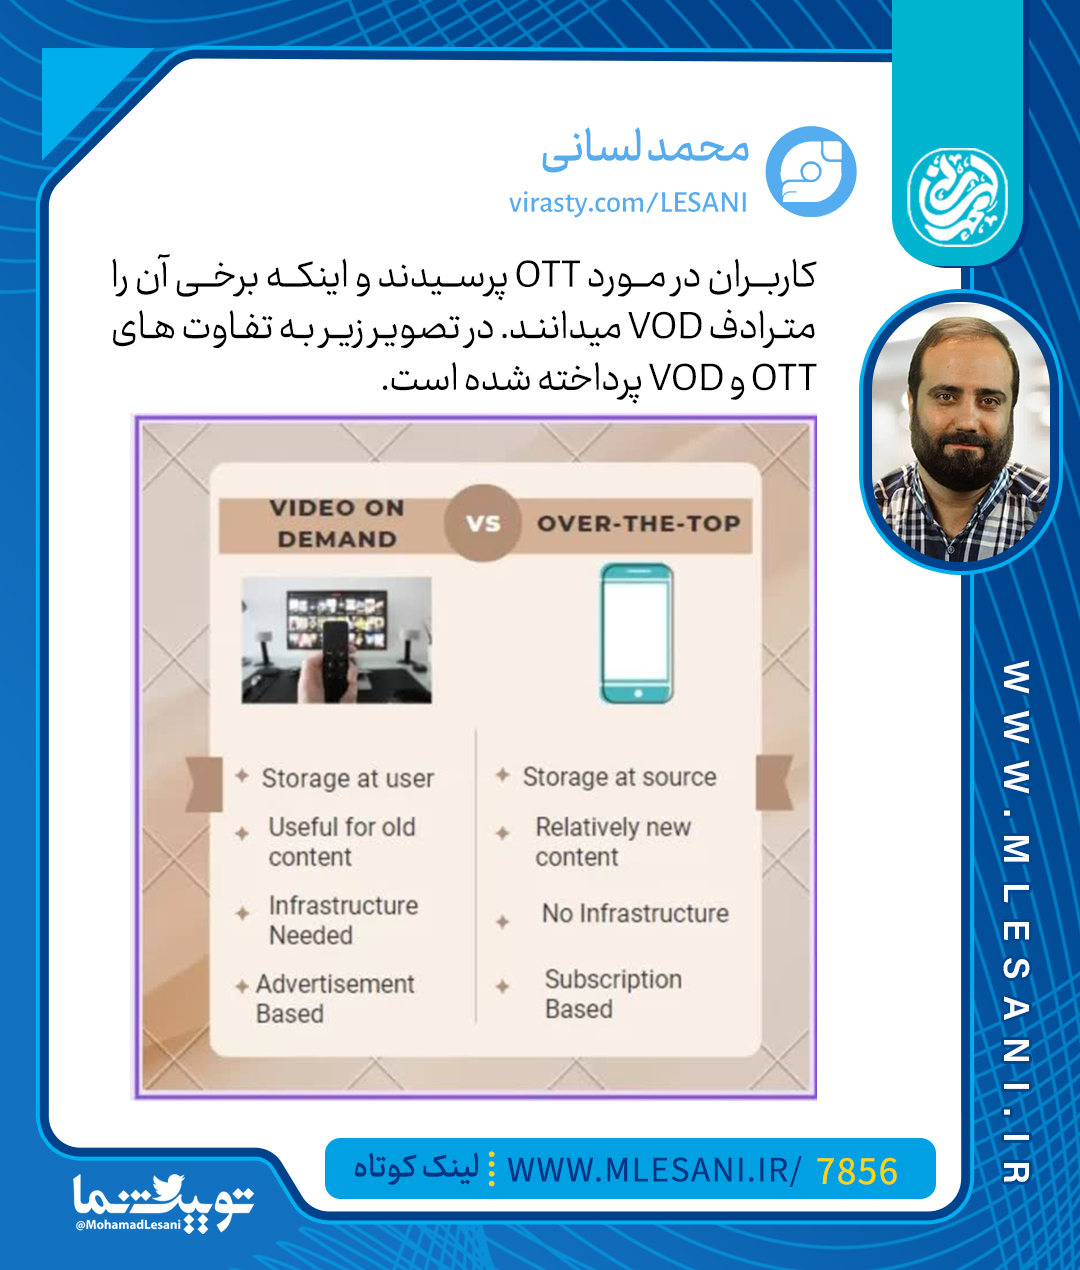 کاربران در مورد OTT پرسیدند و اینکه برخی آن را مترادف VOD میدانند. در تصویر زیر به تفاوت های OTT و VOD پرداخته شده است.